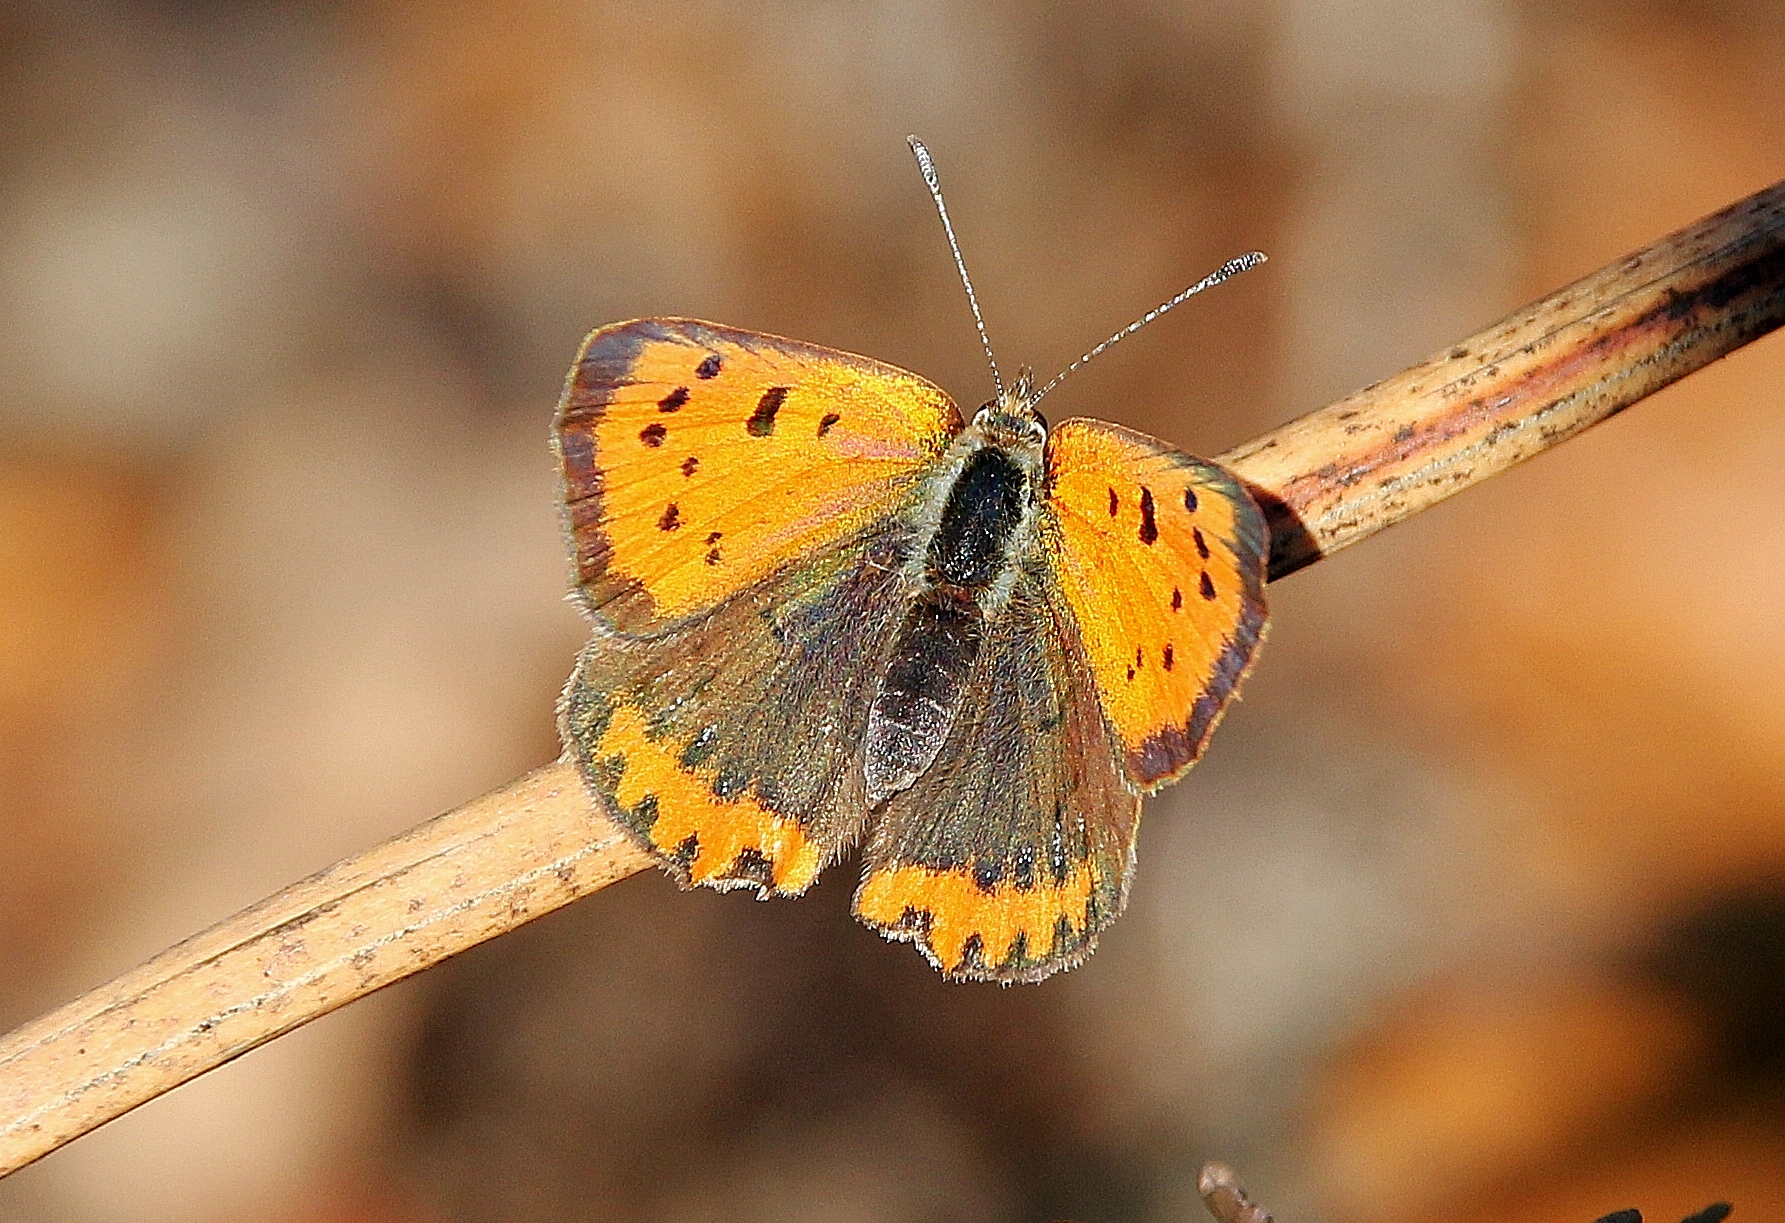 Article de presse : Les papillons menacés de disparition en Auvergne (La Montagne)